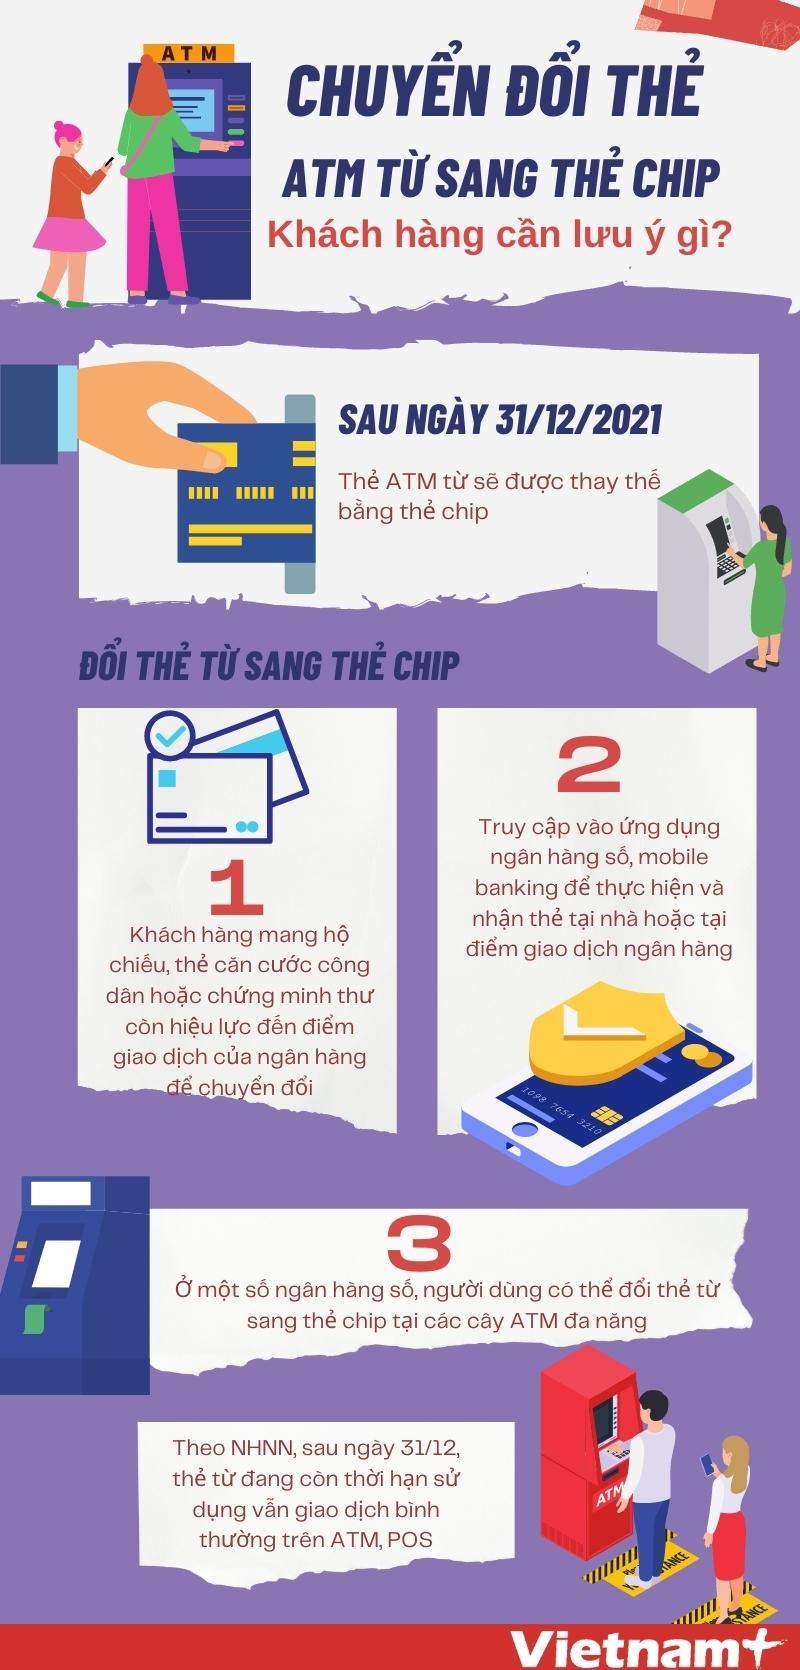 [Infographics] Dieu can luu y khi chuyen doi the ATM tu sang the chip hinh anh 1